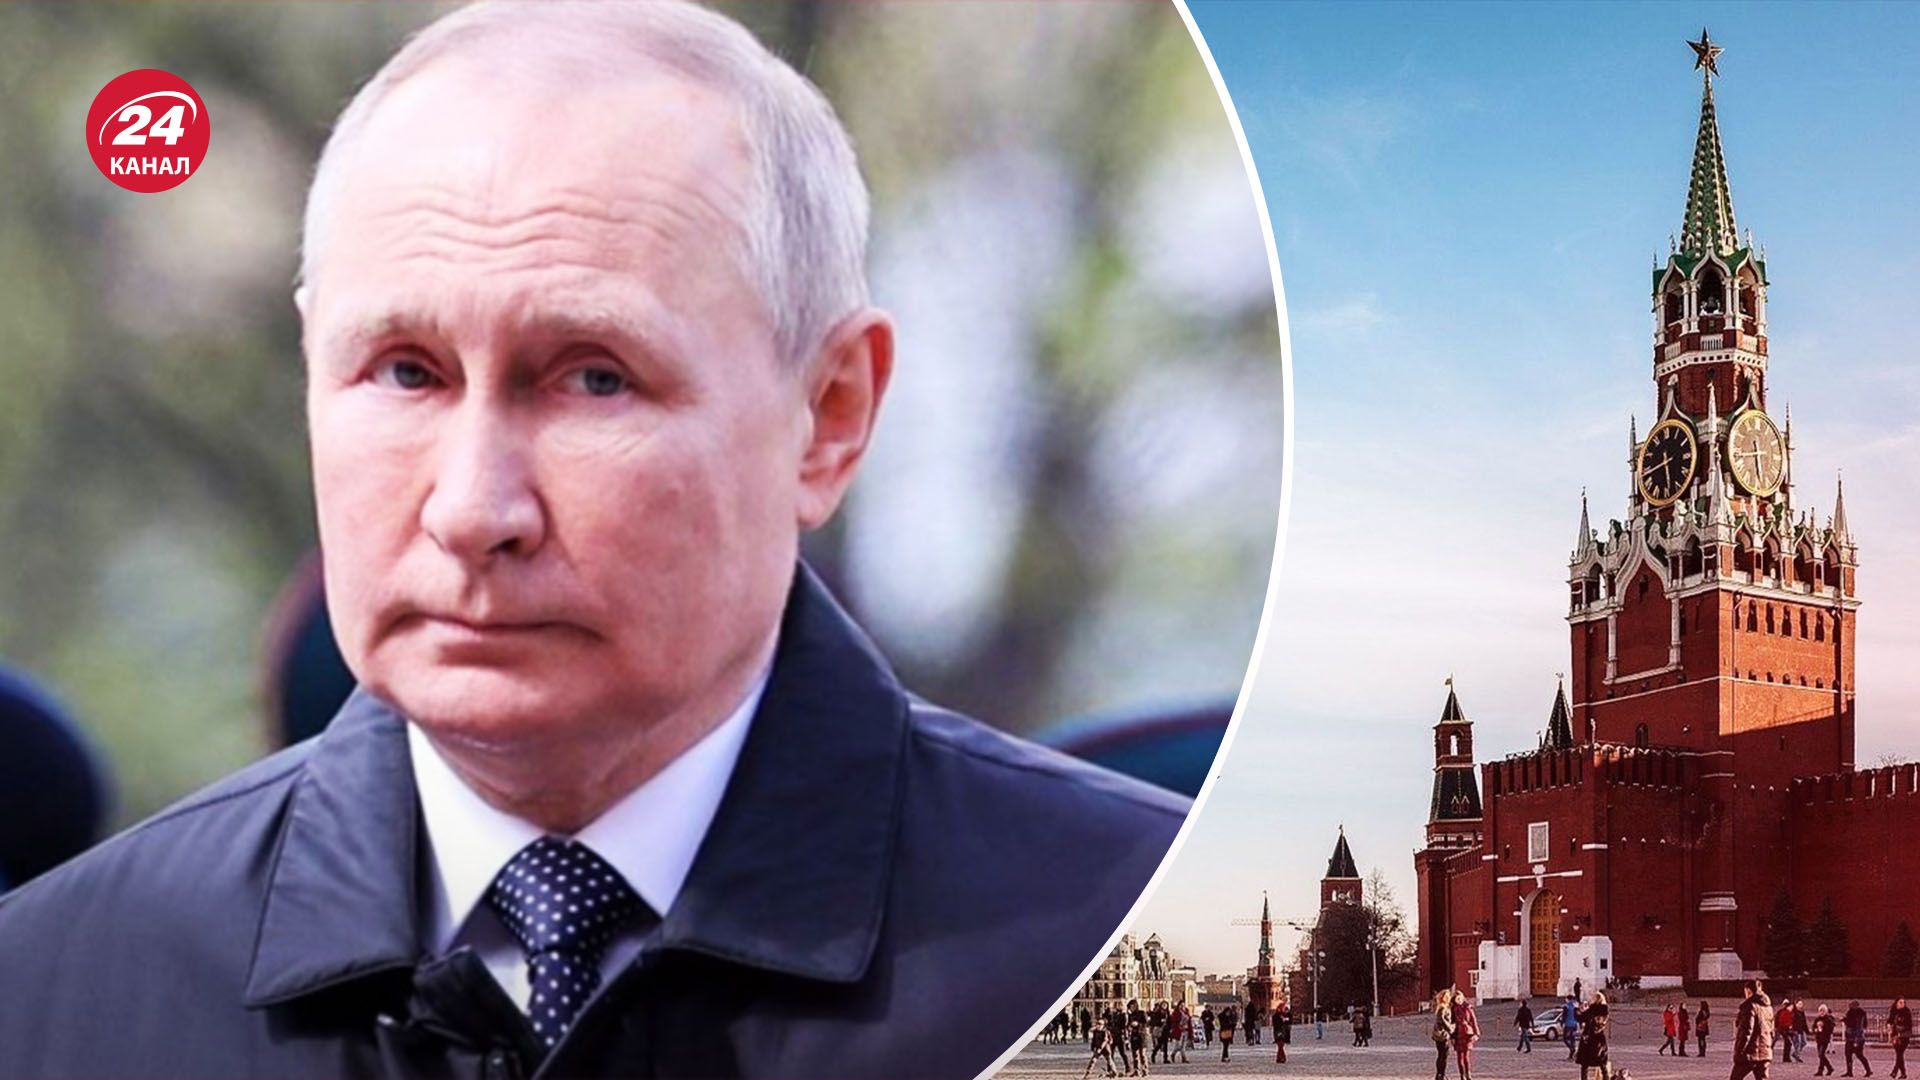 Война из Украины отдалила Путина от россиян - к чему это может привести - 24 Канал